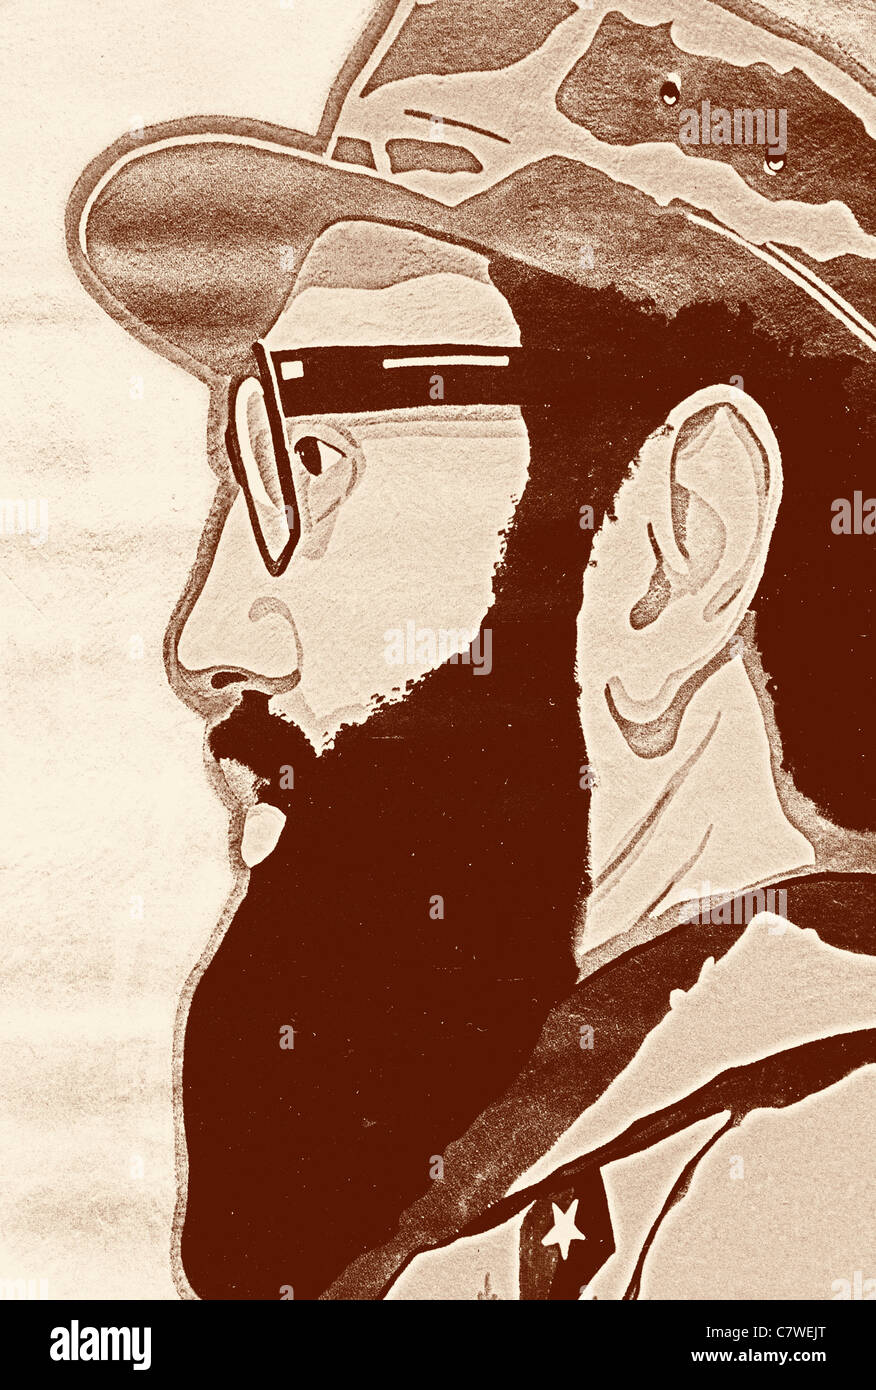 Fidel Castro cartoon illustration à partir d'un magazine de Moscou Russie communisme communiste cuba héros emblématique icône cult Banque D'Images